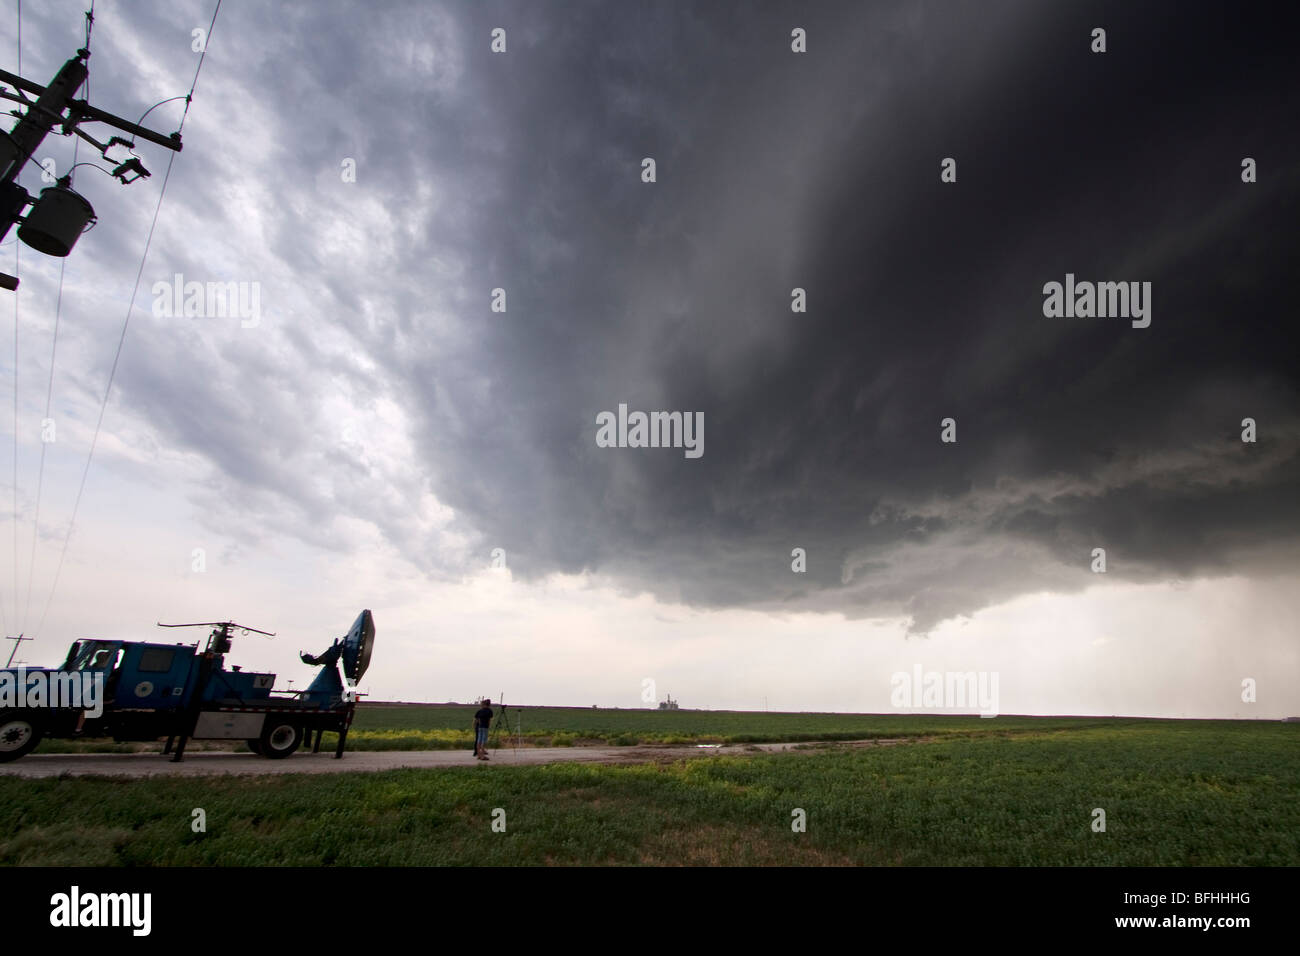 Les chasseurs de tempête et d'une étude Doppler sur roues chariot d'une tempête près de Dodge City, Nebraska, USA, le 9 juin 2009 Banque D'Images